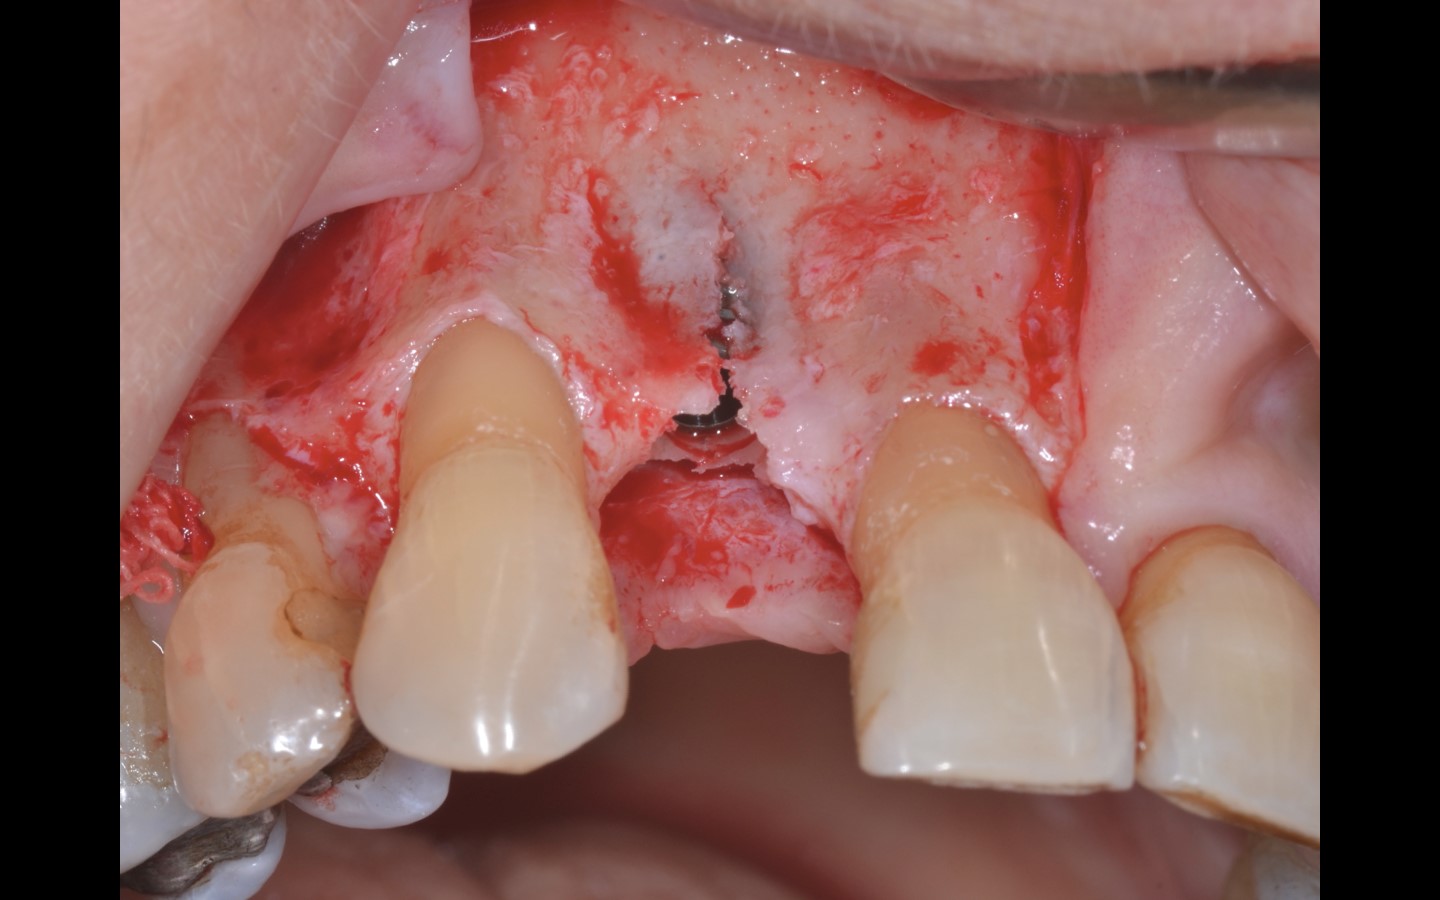 image6 - Reabilitação dento-alveolar com implante Arcsys, enxerto conjuntivo e substituto ósseo Nanosynt